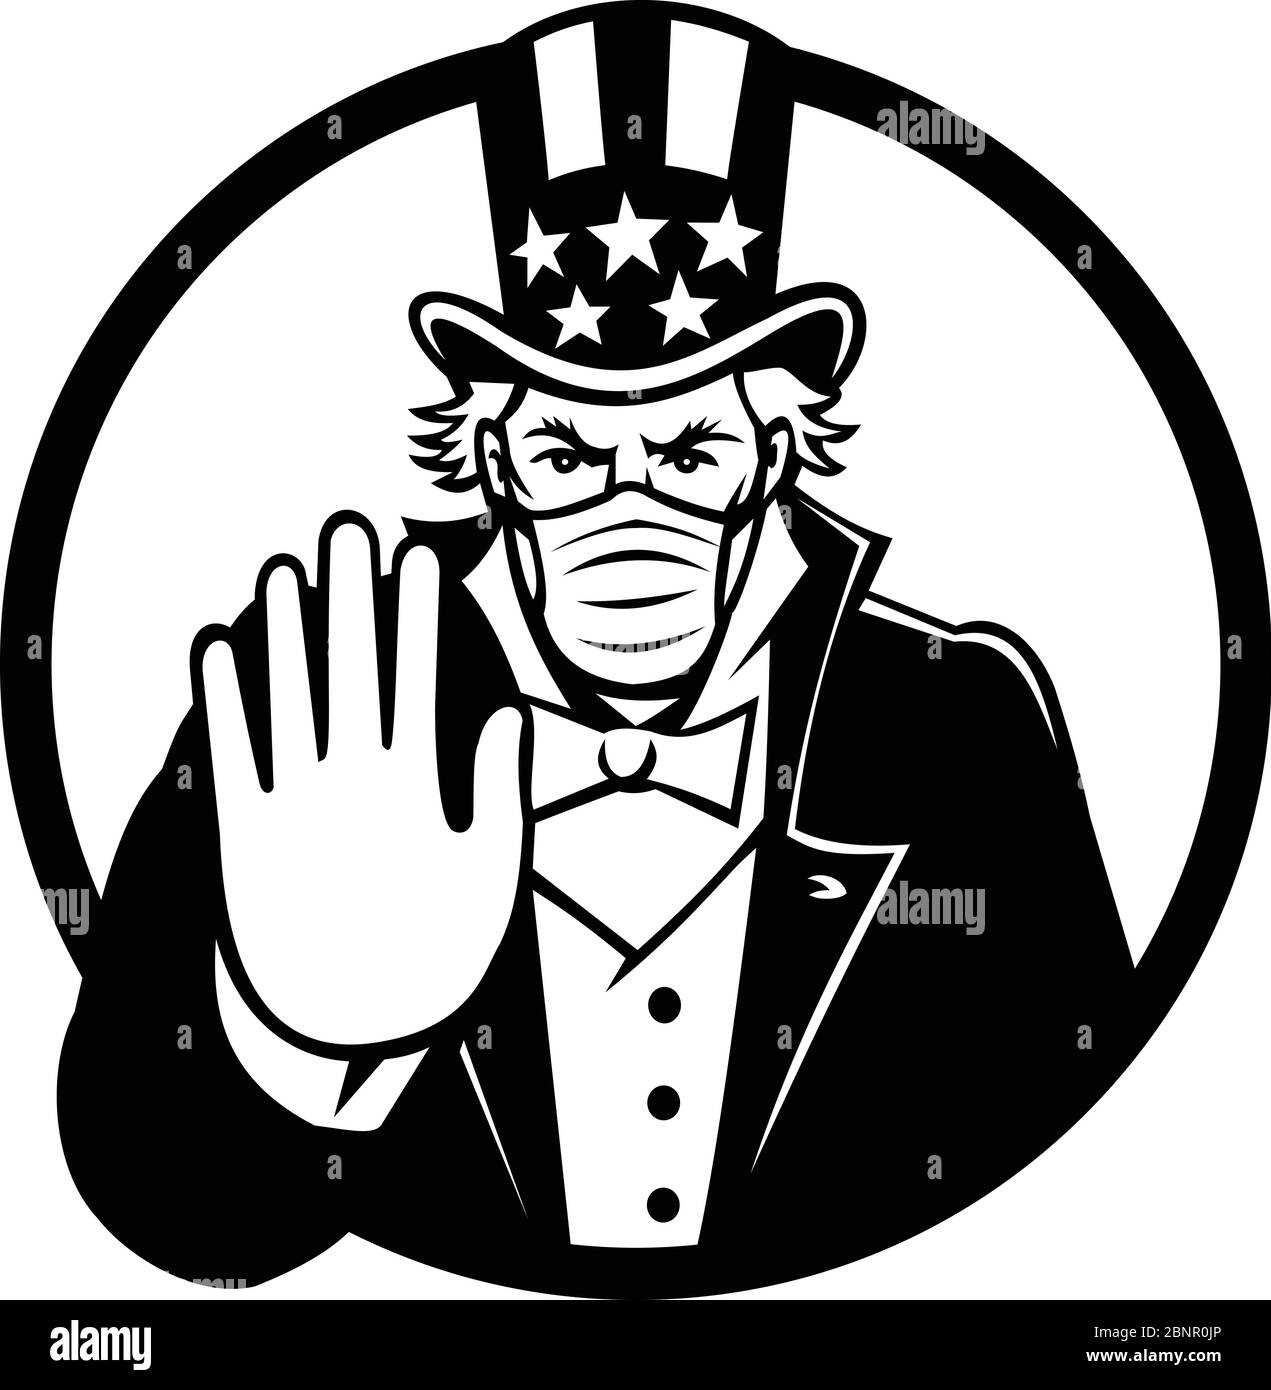 Illustrazione in bianco e nero dello zio americano Sam, personificazione nazionale del governo degli Stati Uniti, indossando una maschera chirurgica, dicendo stop spread del virus Illustrazione Vettoriale